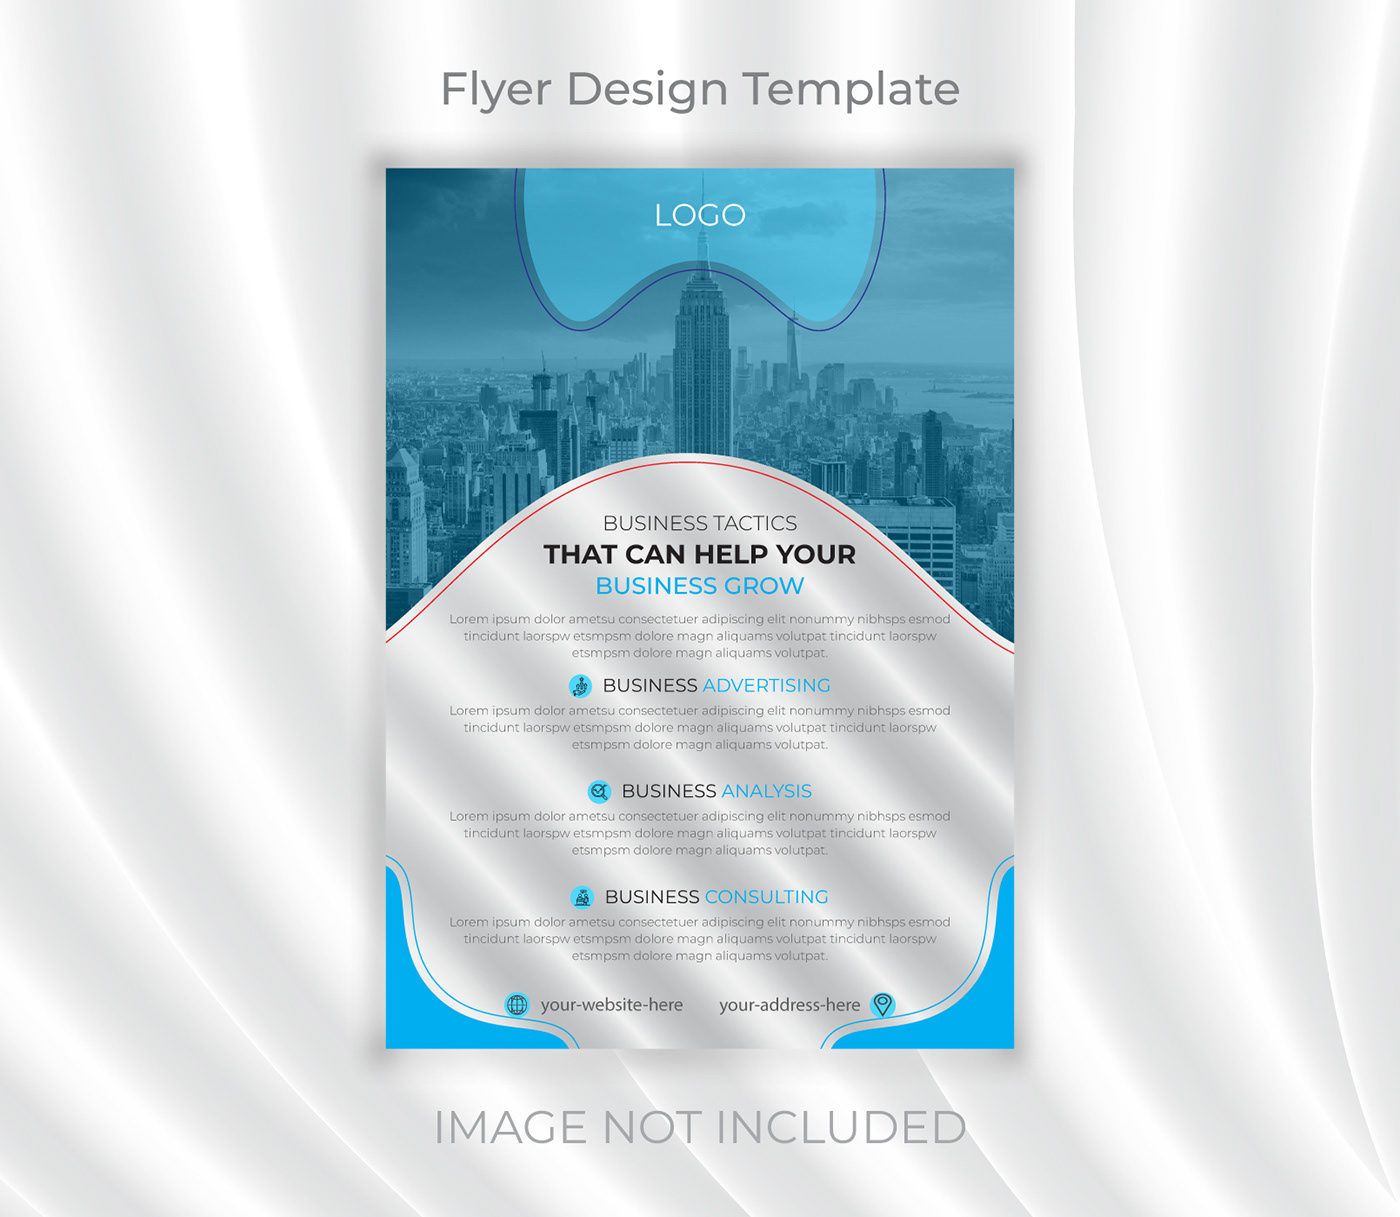 business flyer business flyer design business flyer template Flyer Design Flyer Design Template Flyer Designs flyer design ideas flyers design Graphic Designer